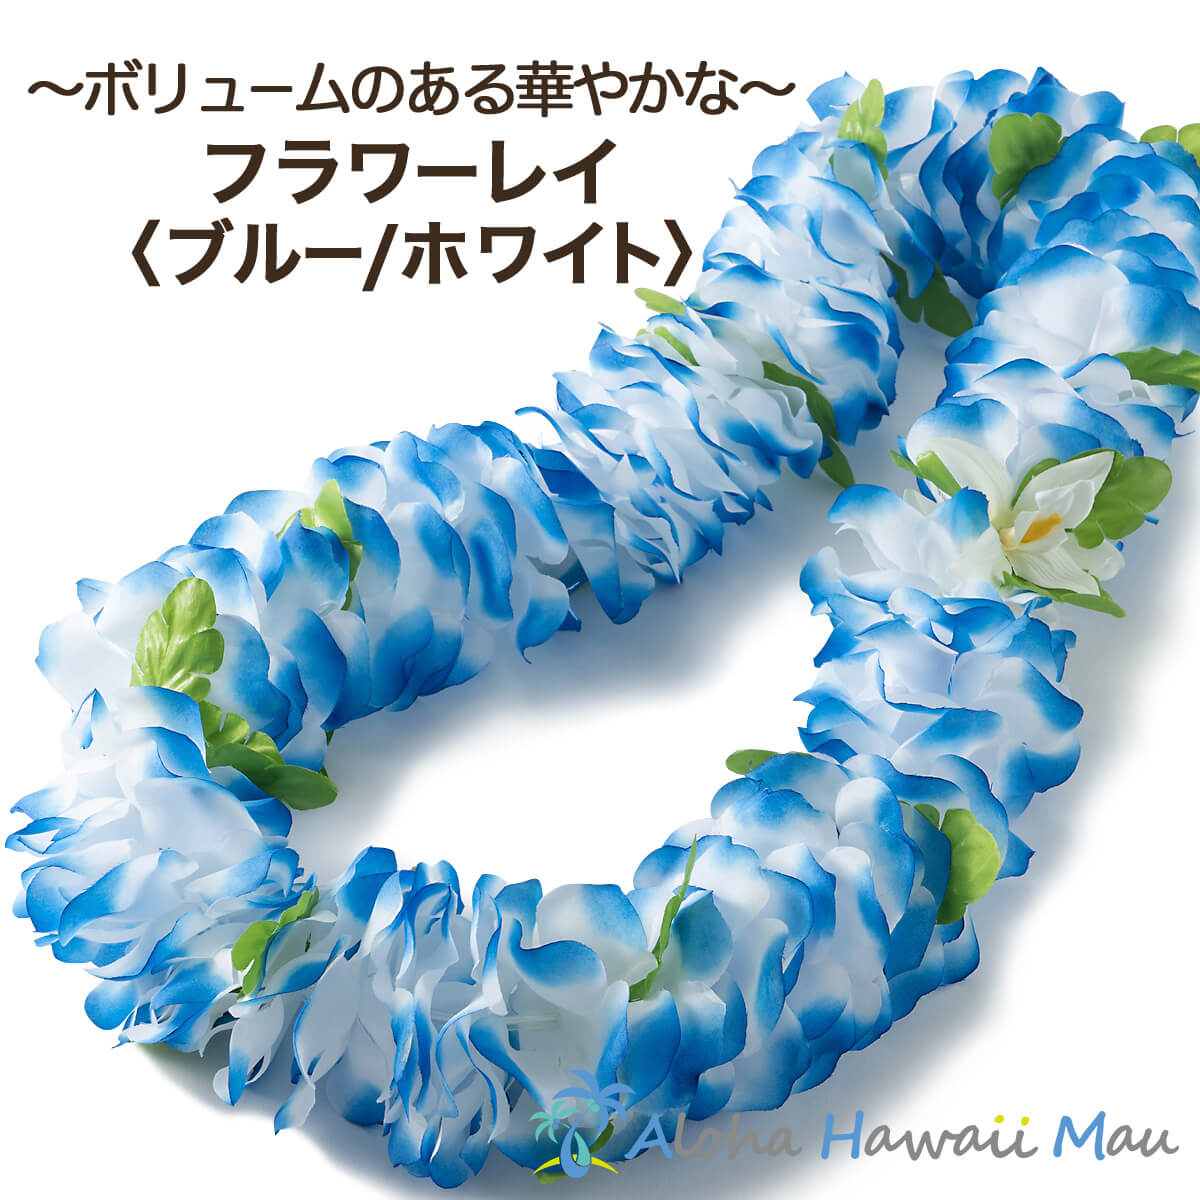 レイとは、フラをされている方にはなじみのある首につける花や葉を用いた首飾りのことで、 髪飾り・ヘッドバンドとともにフラには欠かせないアイテムのひとつ。 花びらの大きさが約9cmで作られたボリューム感のある華やかなハワイアンレイです。 ハワイの空・海を思わせる 青は、白との組み合わせグラデーションで爽やかなカラー。 フラダンスやウクレレのレッスン、舞台、ハワイアンイベントはもちろん、リゾートウェディング、学園祭、卒業式、成人式やお祭り、また、おうちハワイ計画としてお部屋のインテリアとしても素敵です。 色：ブルー・ホワイト 素材：ポリエステル 長さ：約56cm（全長約113cm） Made in China こちらのフラワーレイは、入荷時期によって、色合いが異なる場合がございます、予めご了承くださいませ。フラダンス レイフラワーレイ ブルー/ホワイト 花びらの大きさが約9cmで作られたボリューム感のある華やかなハワイアンフラワーレイです。 ハワイの空・海を思わせる 青は、白との組み合わせグラデーションで爽やかなカラー。 フラダンスやウクレレのレッスン・舞台・ハワイアンイベントに、またおうちハワイ計画としてお部屋のインテリアとしても素敵です。 Aloha Hawaii Mauでは、同じシリーズのヘッドバンド（ポォ）もご用意。 全長：約113cm ハワイ規格のレイは、ほつれ止め加工を施しておりませんので、花や葉にほつれなどがある場合がございます、 また、ひとつひとつ手作りのため、花の付き方が異なる場合や色合いが若干異なる場合がございます。 おおらかなハワイ規格のため、予めご了承願います。 長さ：約56cm（全長 約113cm) カラー：ブルー・ホワイト 素材：ポリエステル &copy; 2019 Waiesu Co.,Ltd. 当サイト内の画像、及び文章等の複写及び無断転載を禁じます。